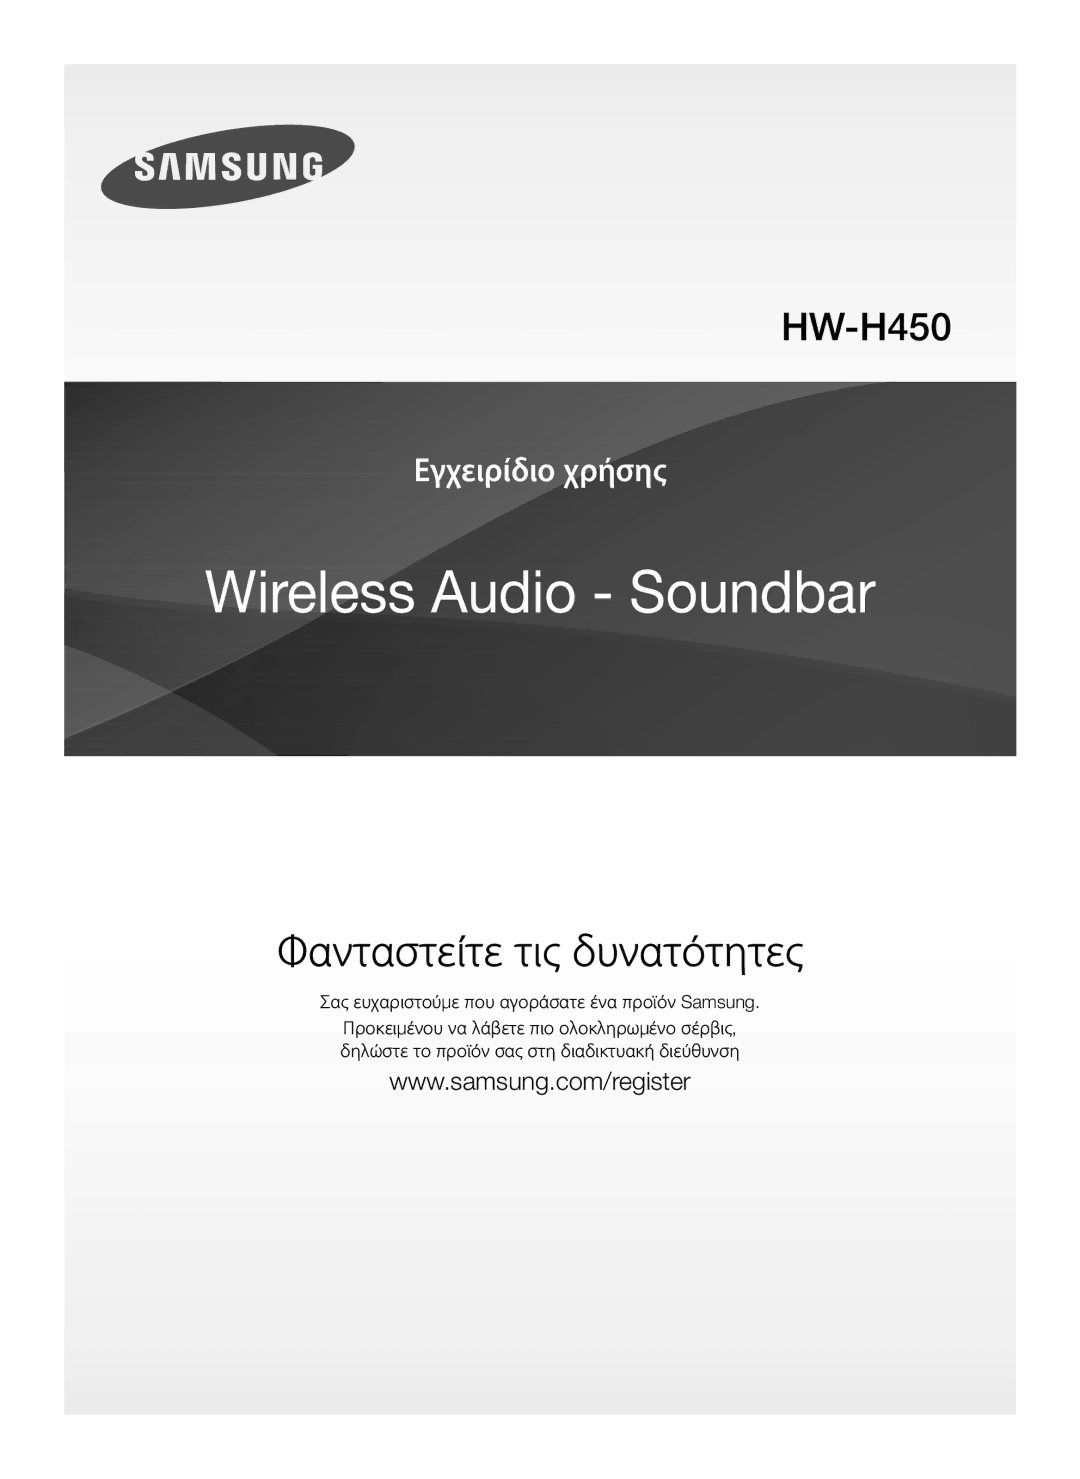 Samsung HW-H450/EN, HW-H450/TK, HW-H450/ZF, HW-H450/XN, HW-H450/XE manual Φανταστείτε τις δυνατότητες 